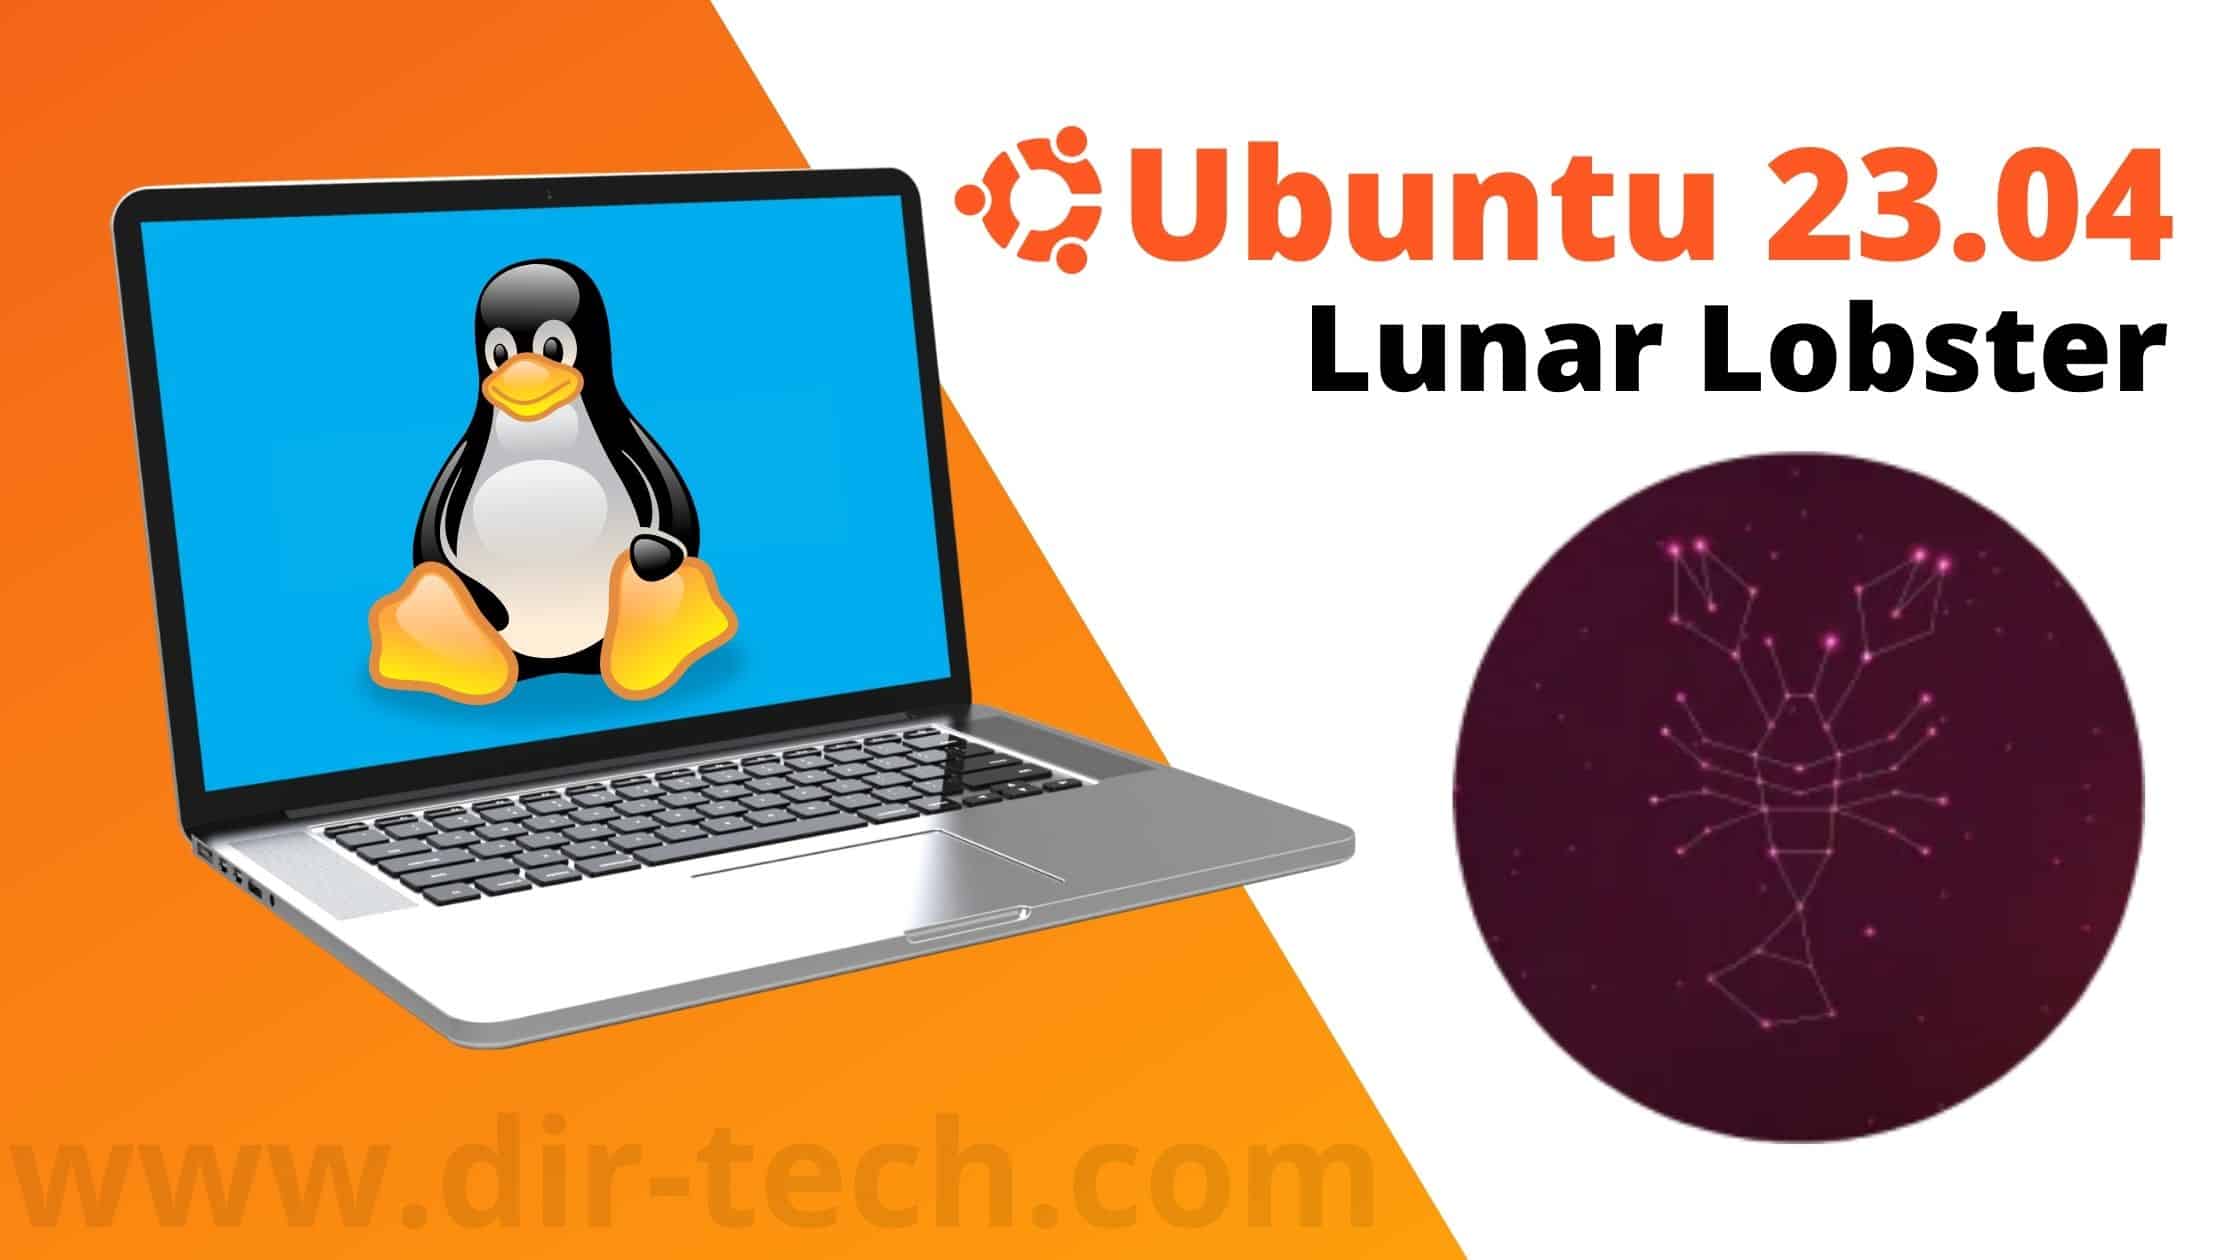 Lire la suite à propos de l’article Canonical dévoile Ubuntu 23.04 Lunar Lobster